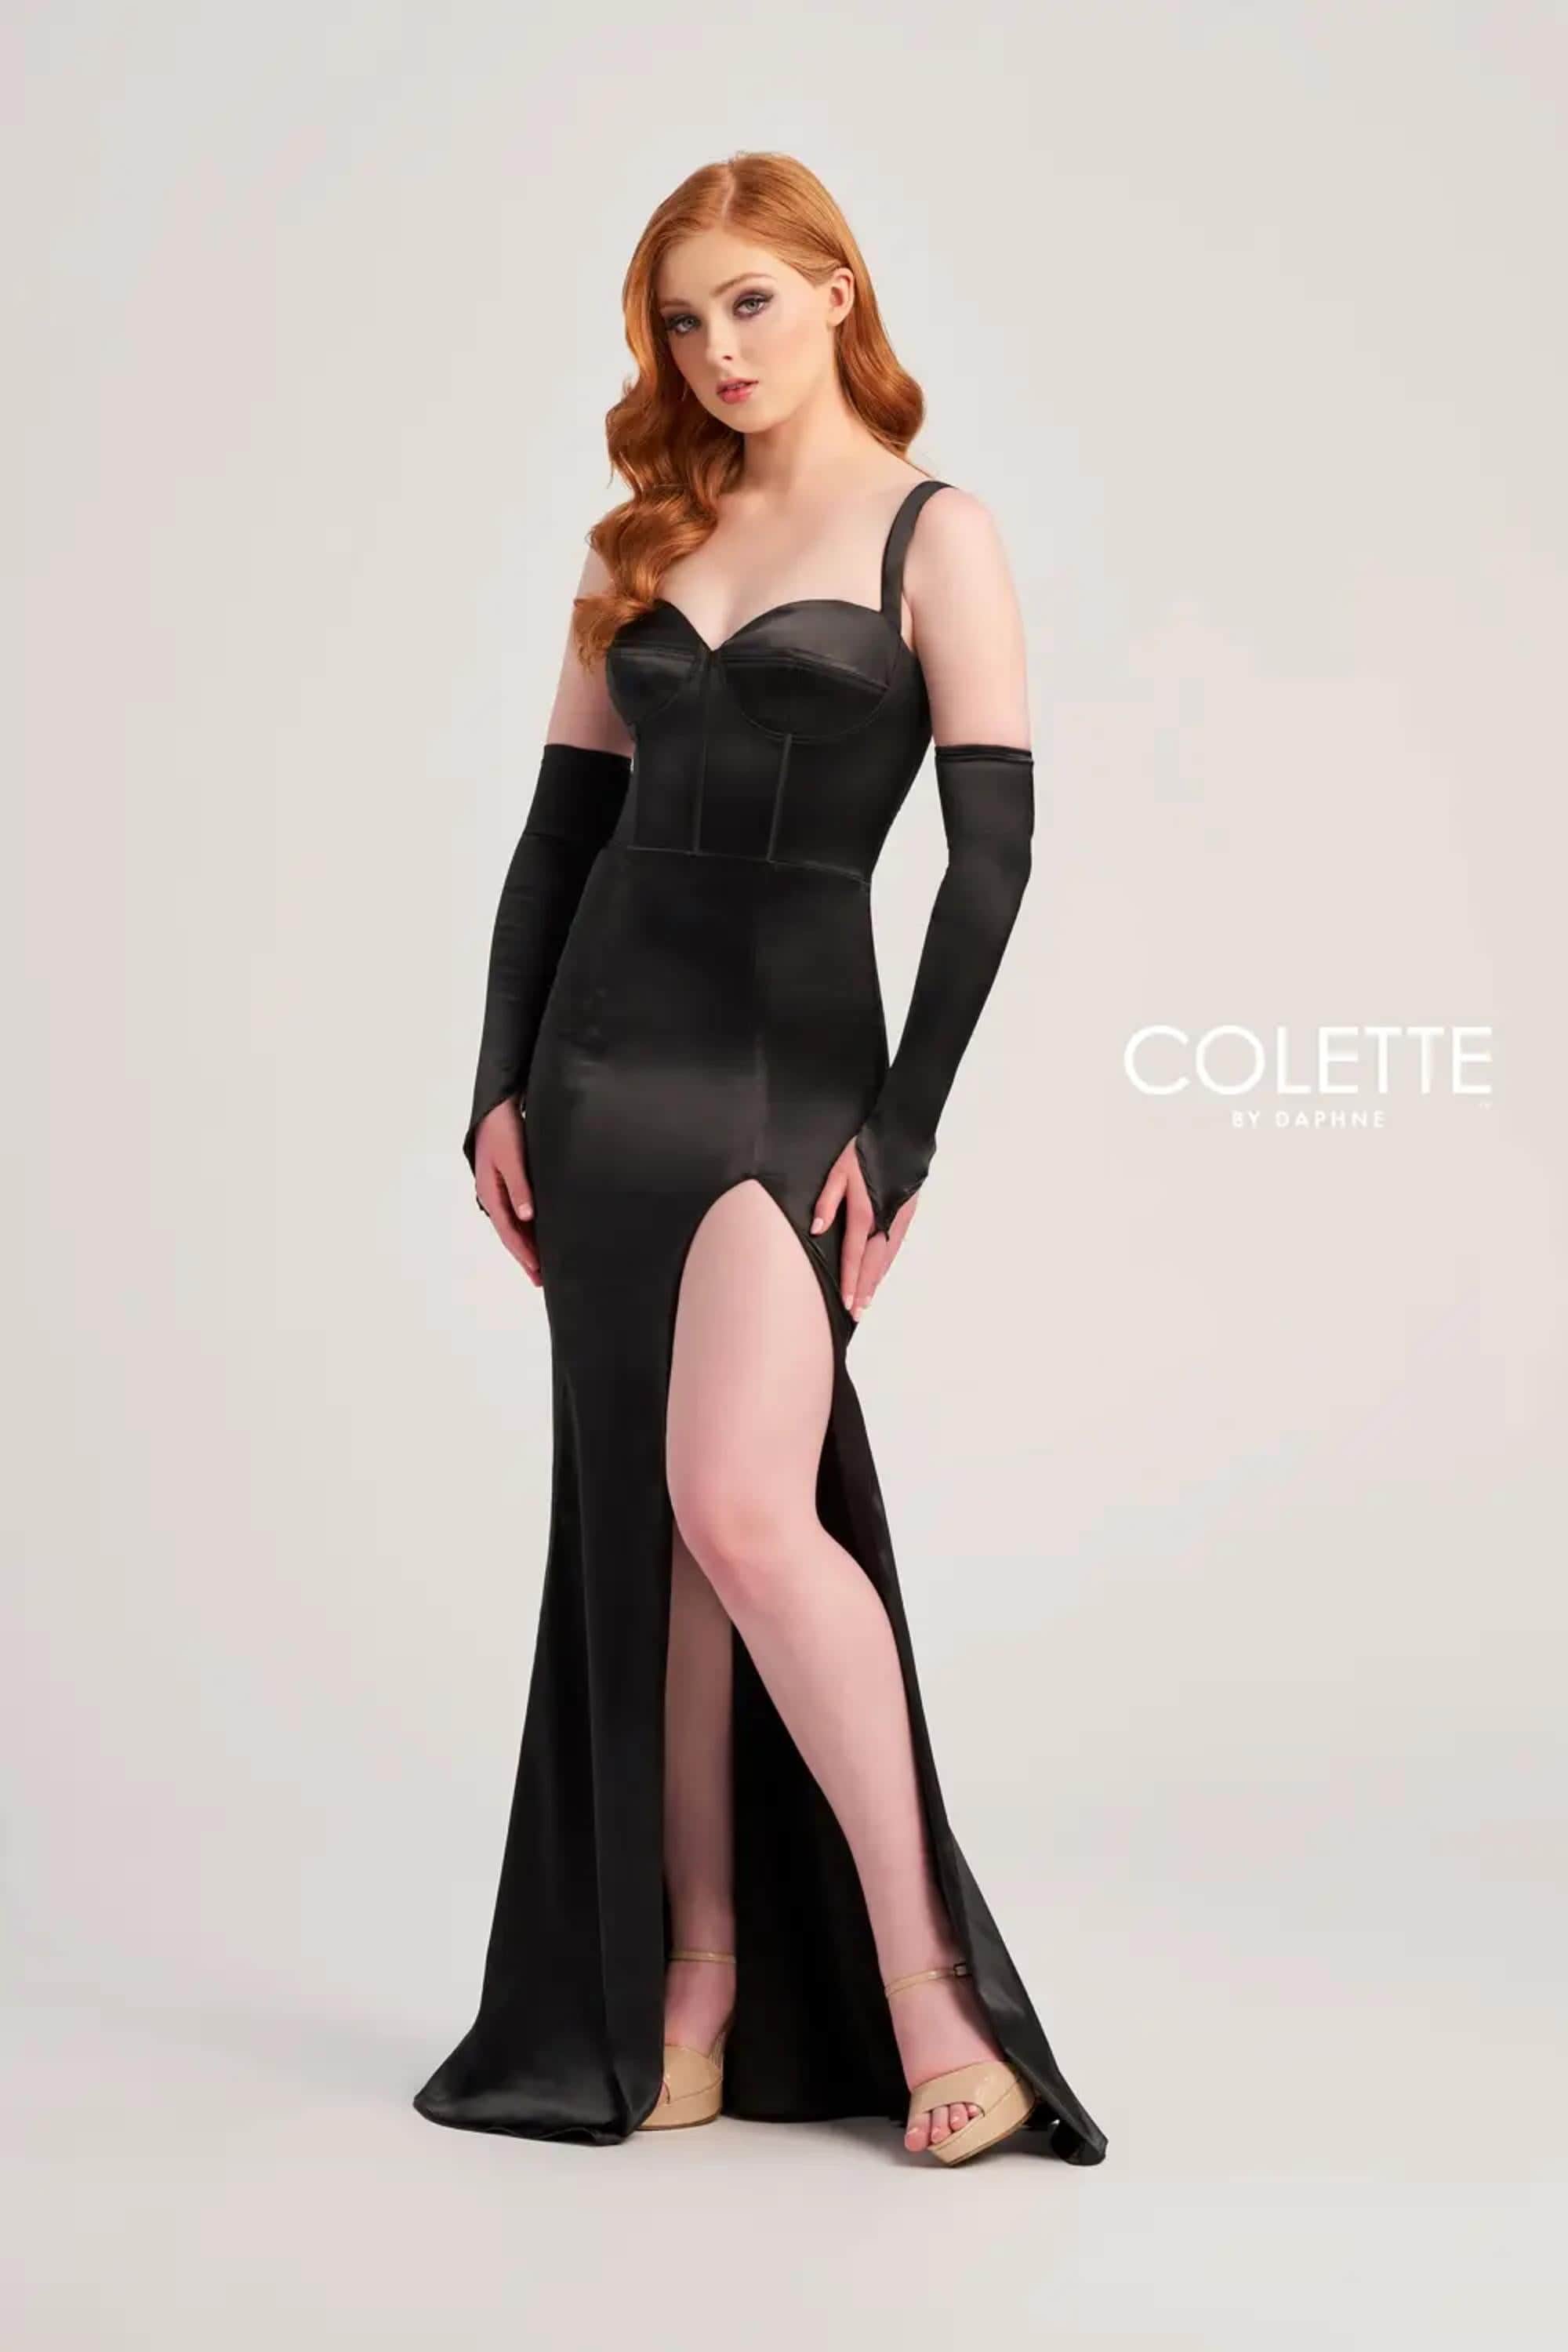 Colette By Daphne, Colette By Daphne CL5252 - Satin Corset Prom Dress